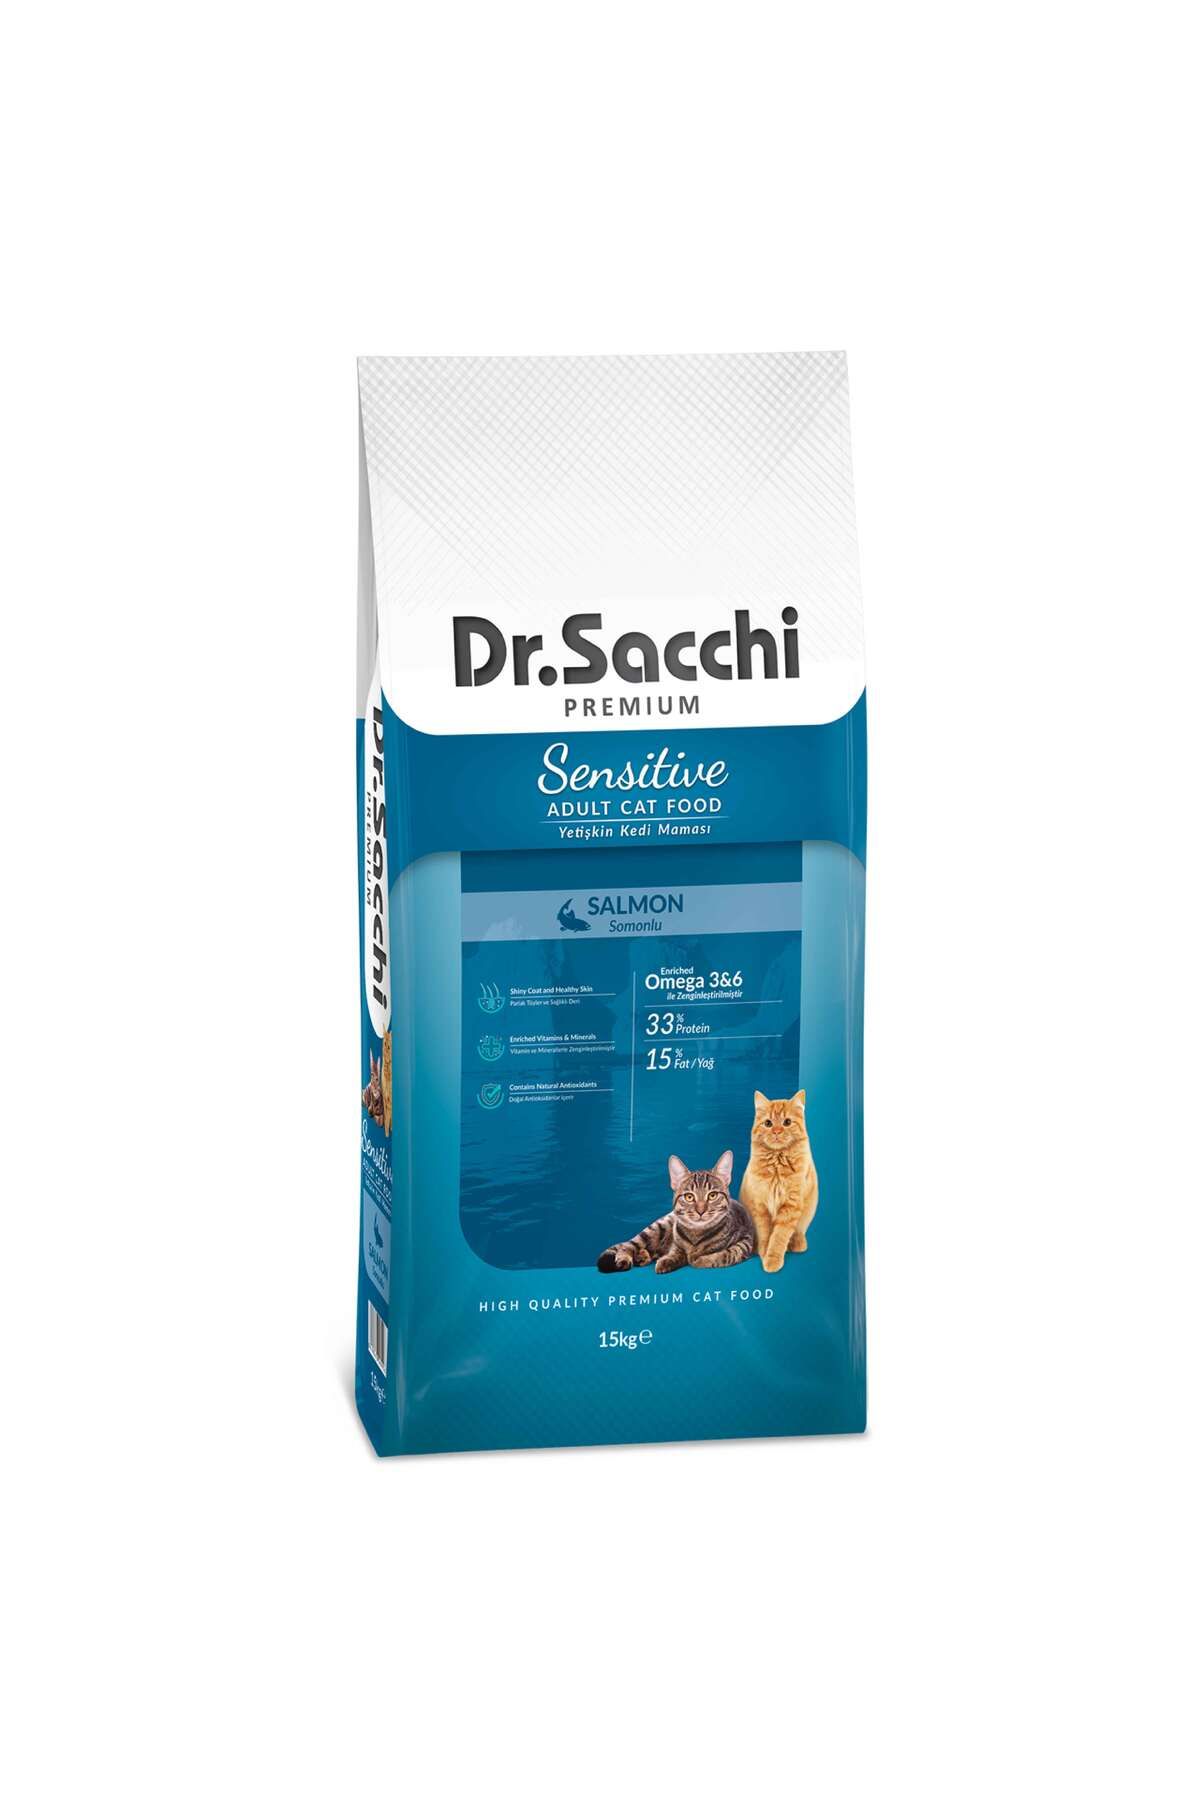 Dr. Sacchi Premium Sensitive Samonlu Yetişkin Kedi Maması 15 Kg